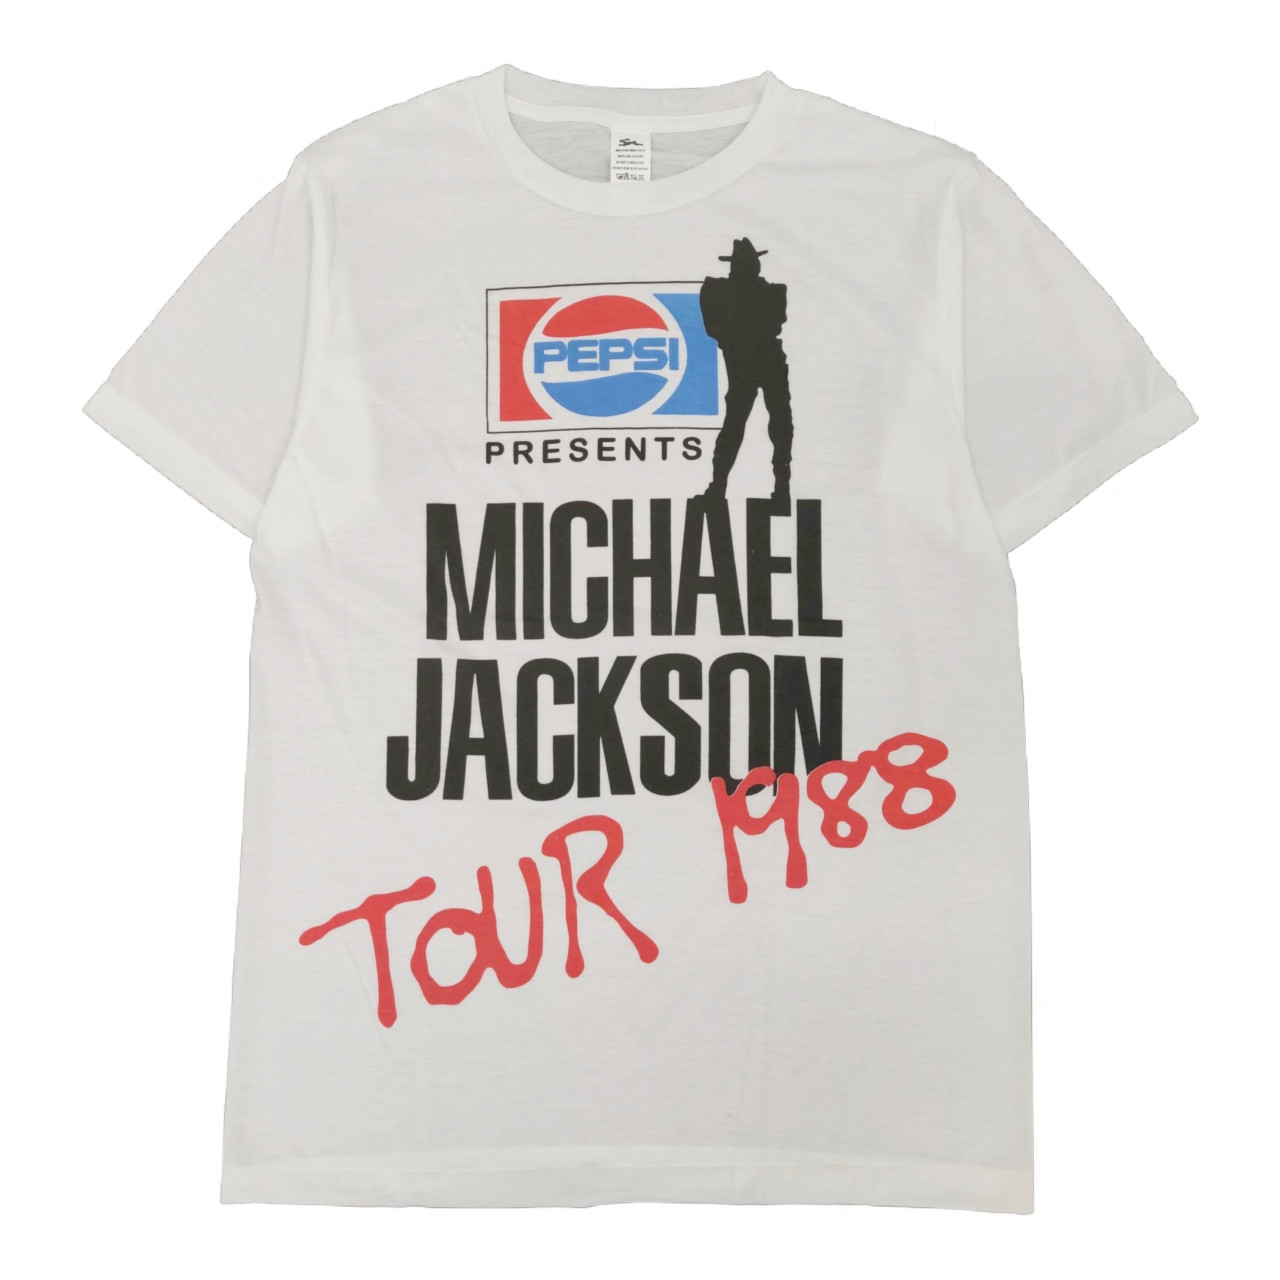 『入手困難』マイケル・ジャクソン 1988 ツアーTシャツ着丈67cm